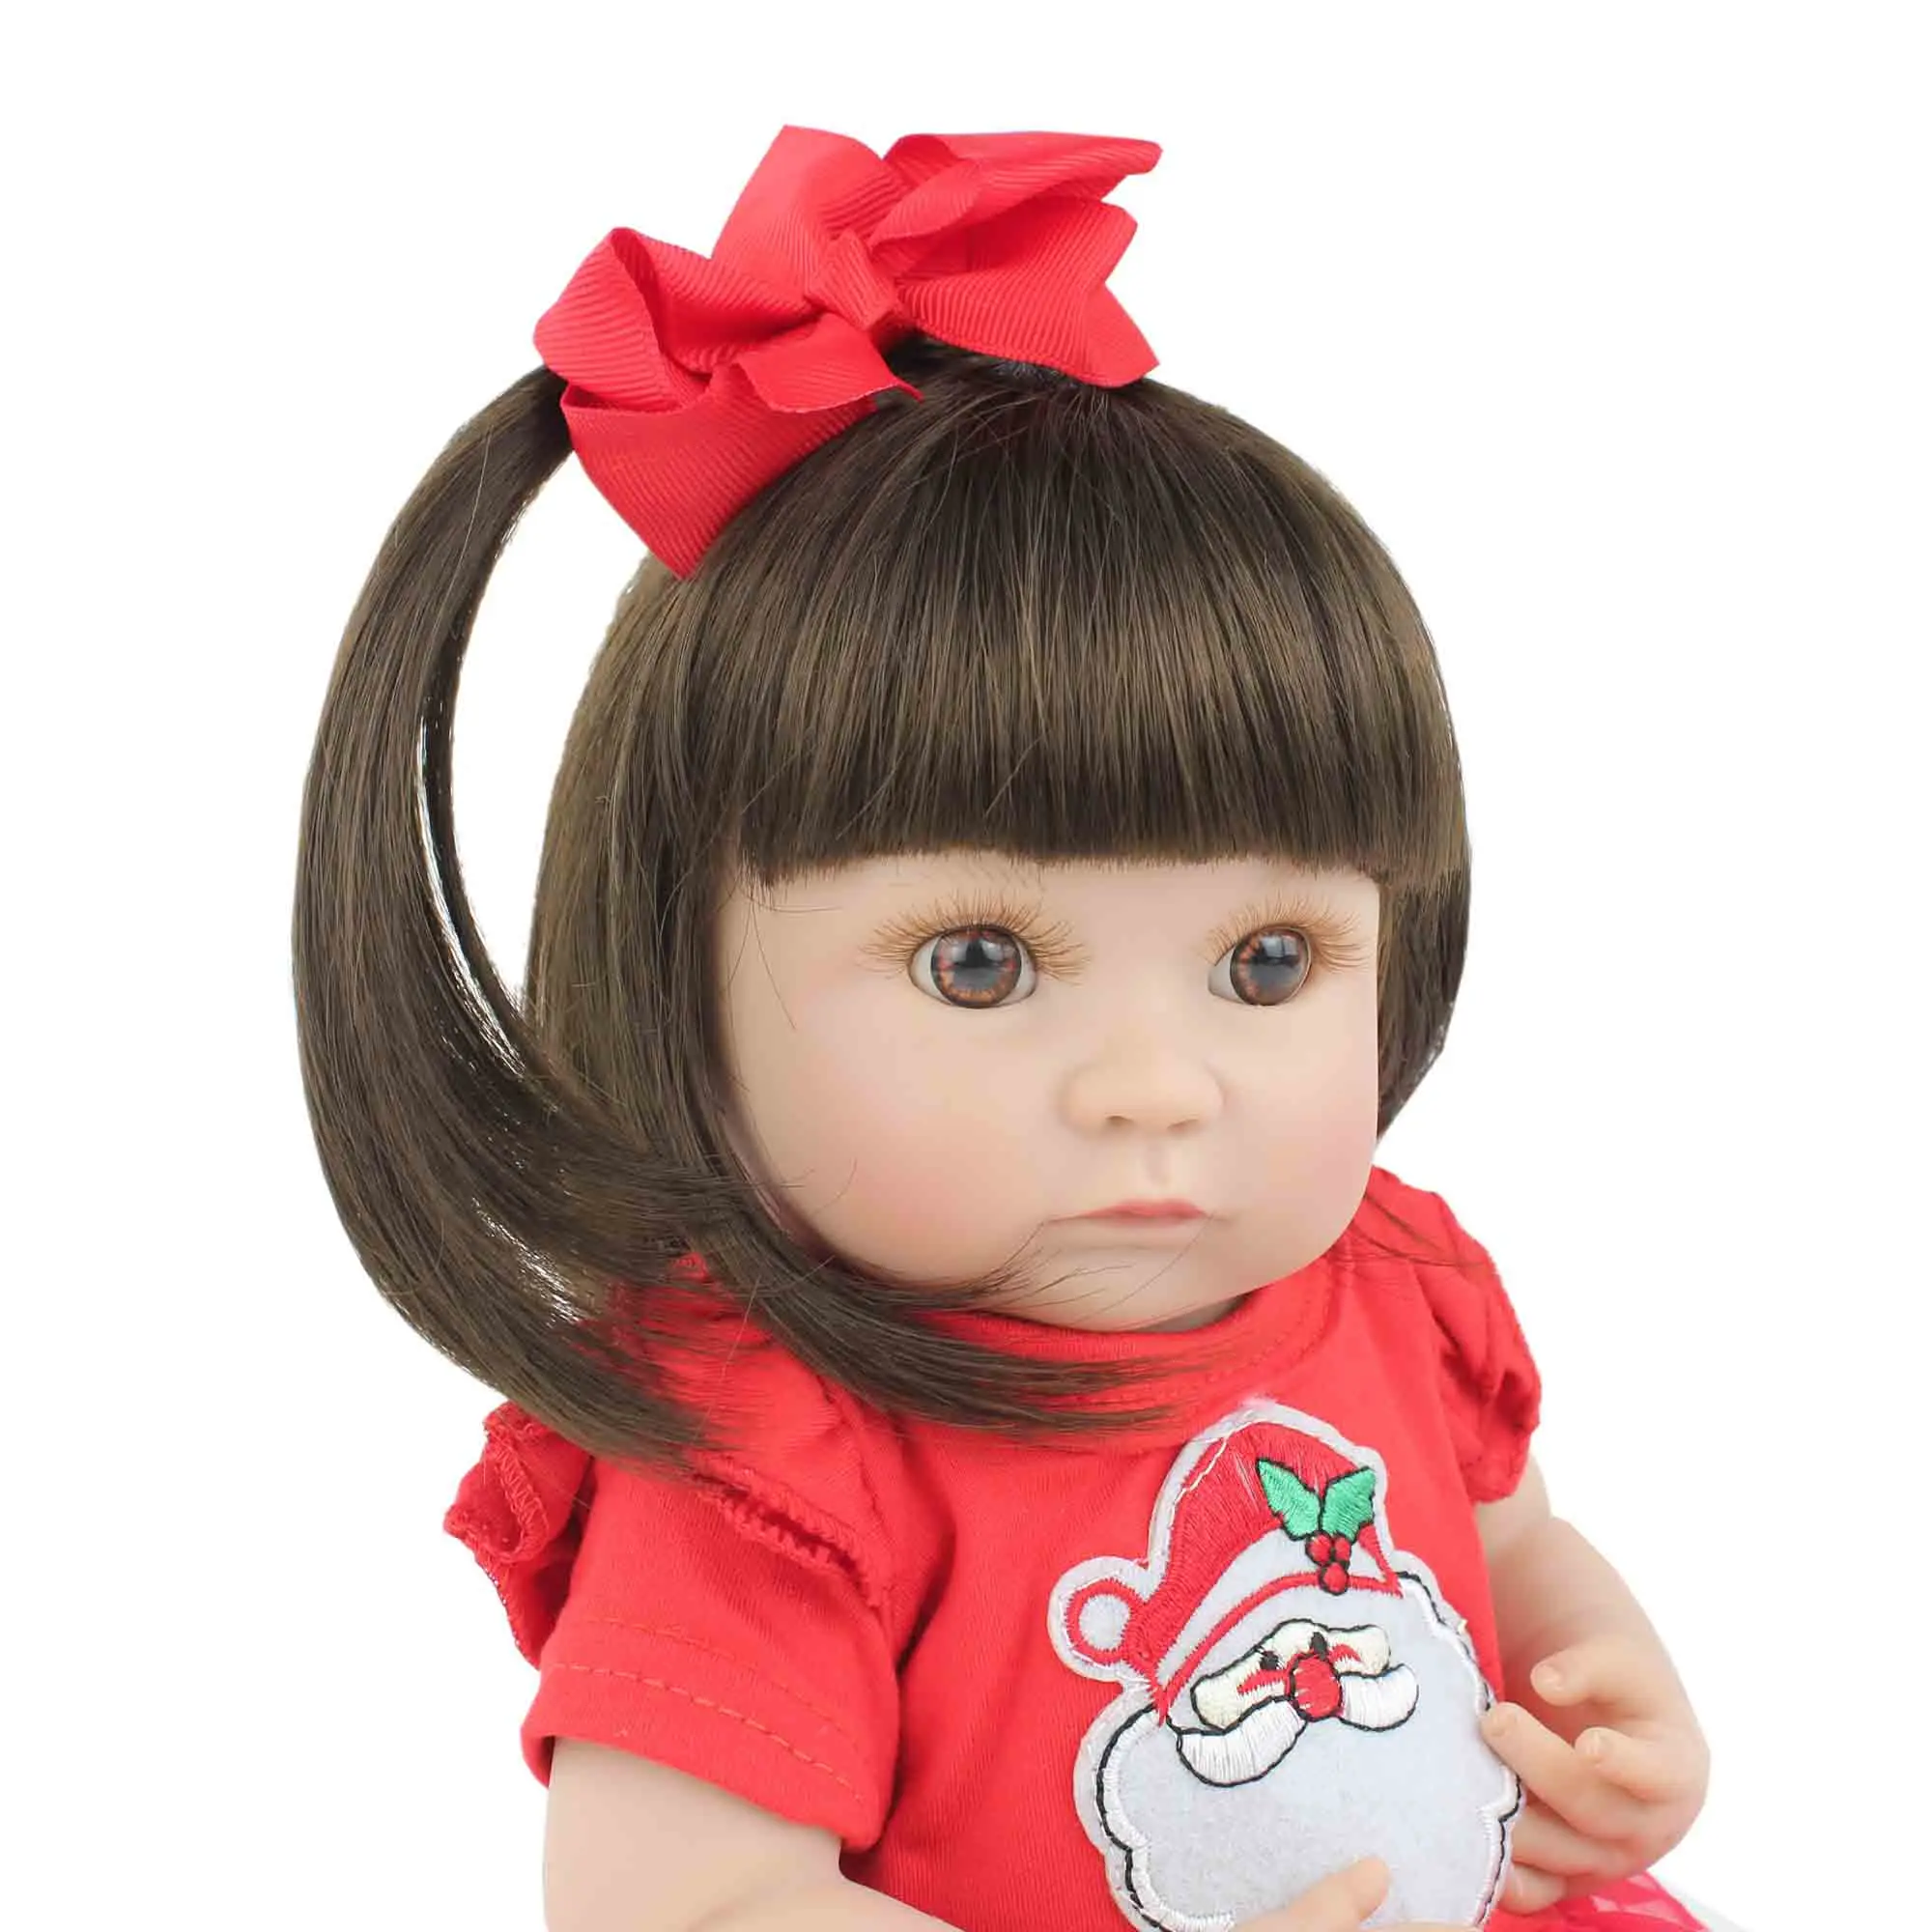 40 см полностью силиконовая кукла для новорожденного, игрушка для девочки, мягкая виниловая Рождественская одежда, мини-кукла для новорожденных, подарок для ребенка, игрушка для купания